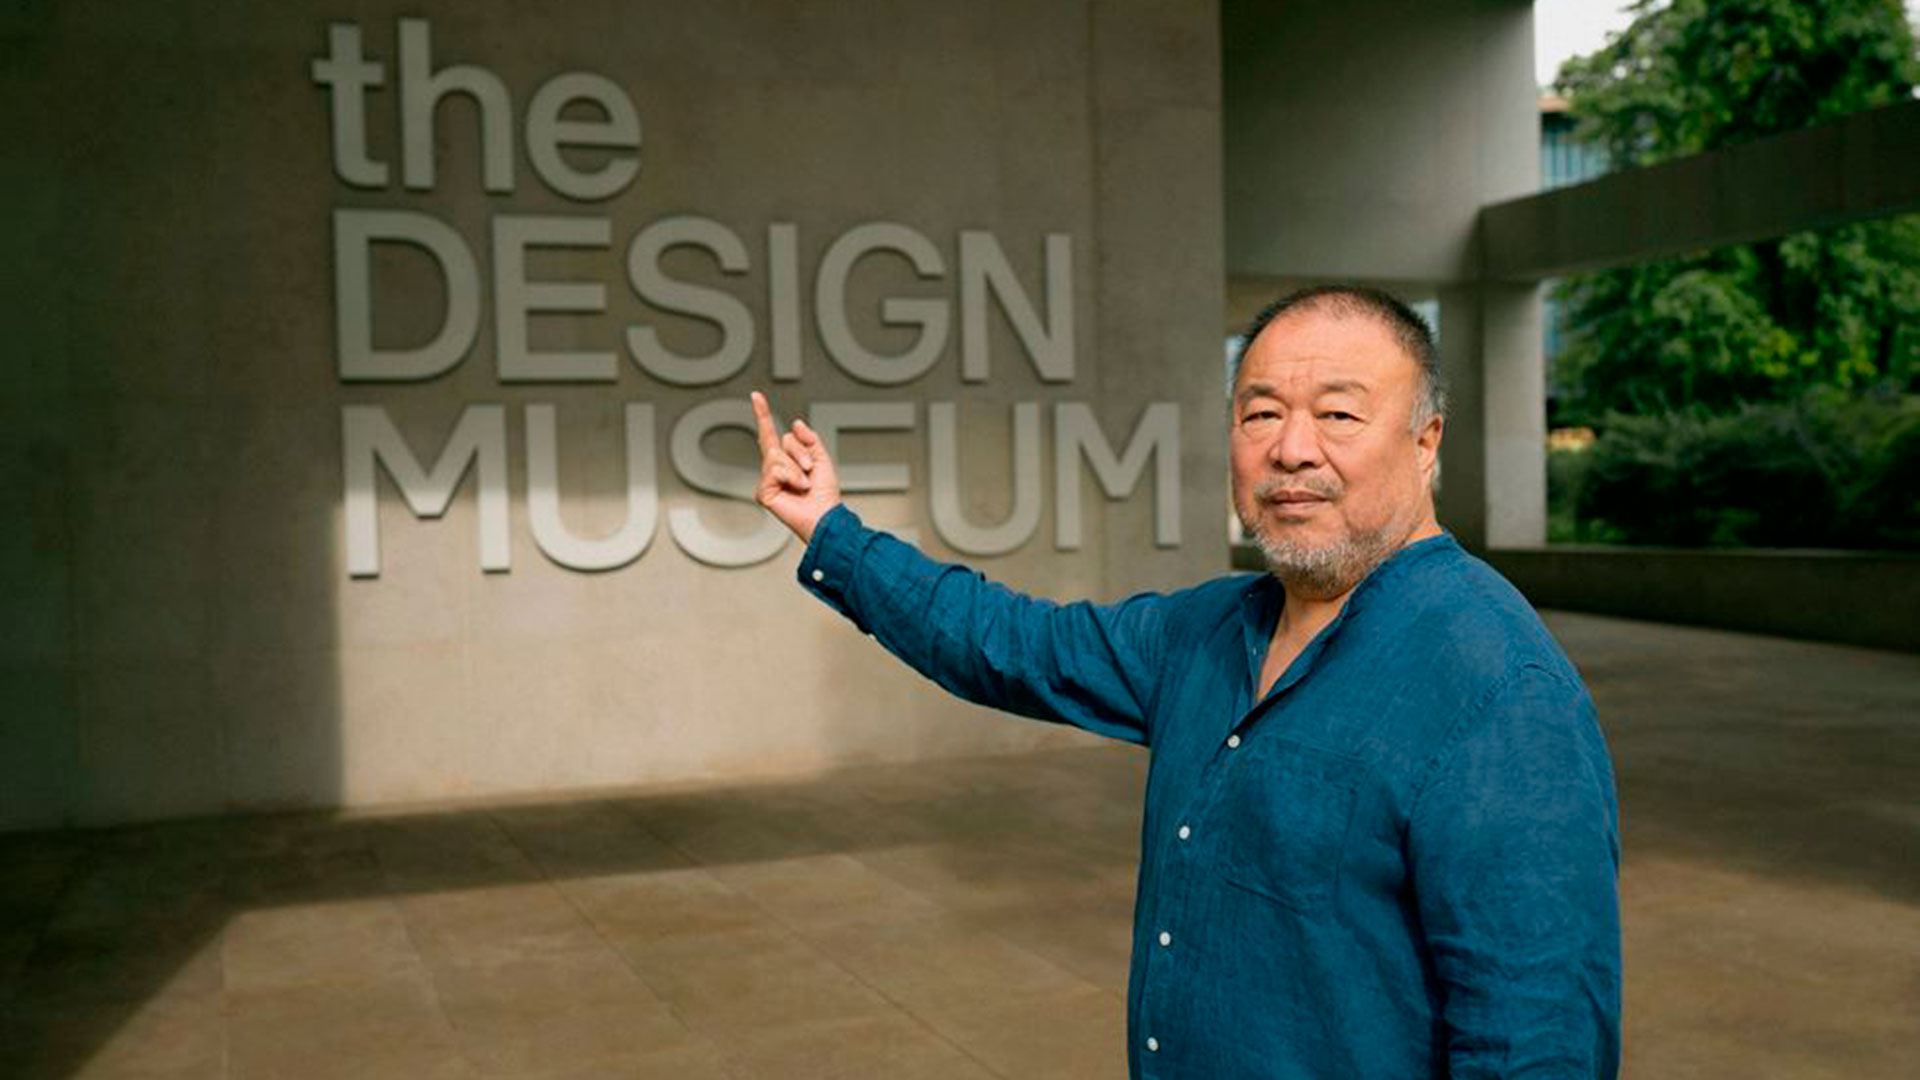 La exposición "Ai Weiwei: Making Sense" abrirá en el Museo de Diseño de Londres entre abril y julio (Foto: Rick Pushinsky - The Museum Design of London)